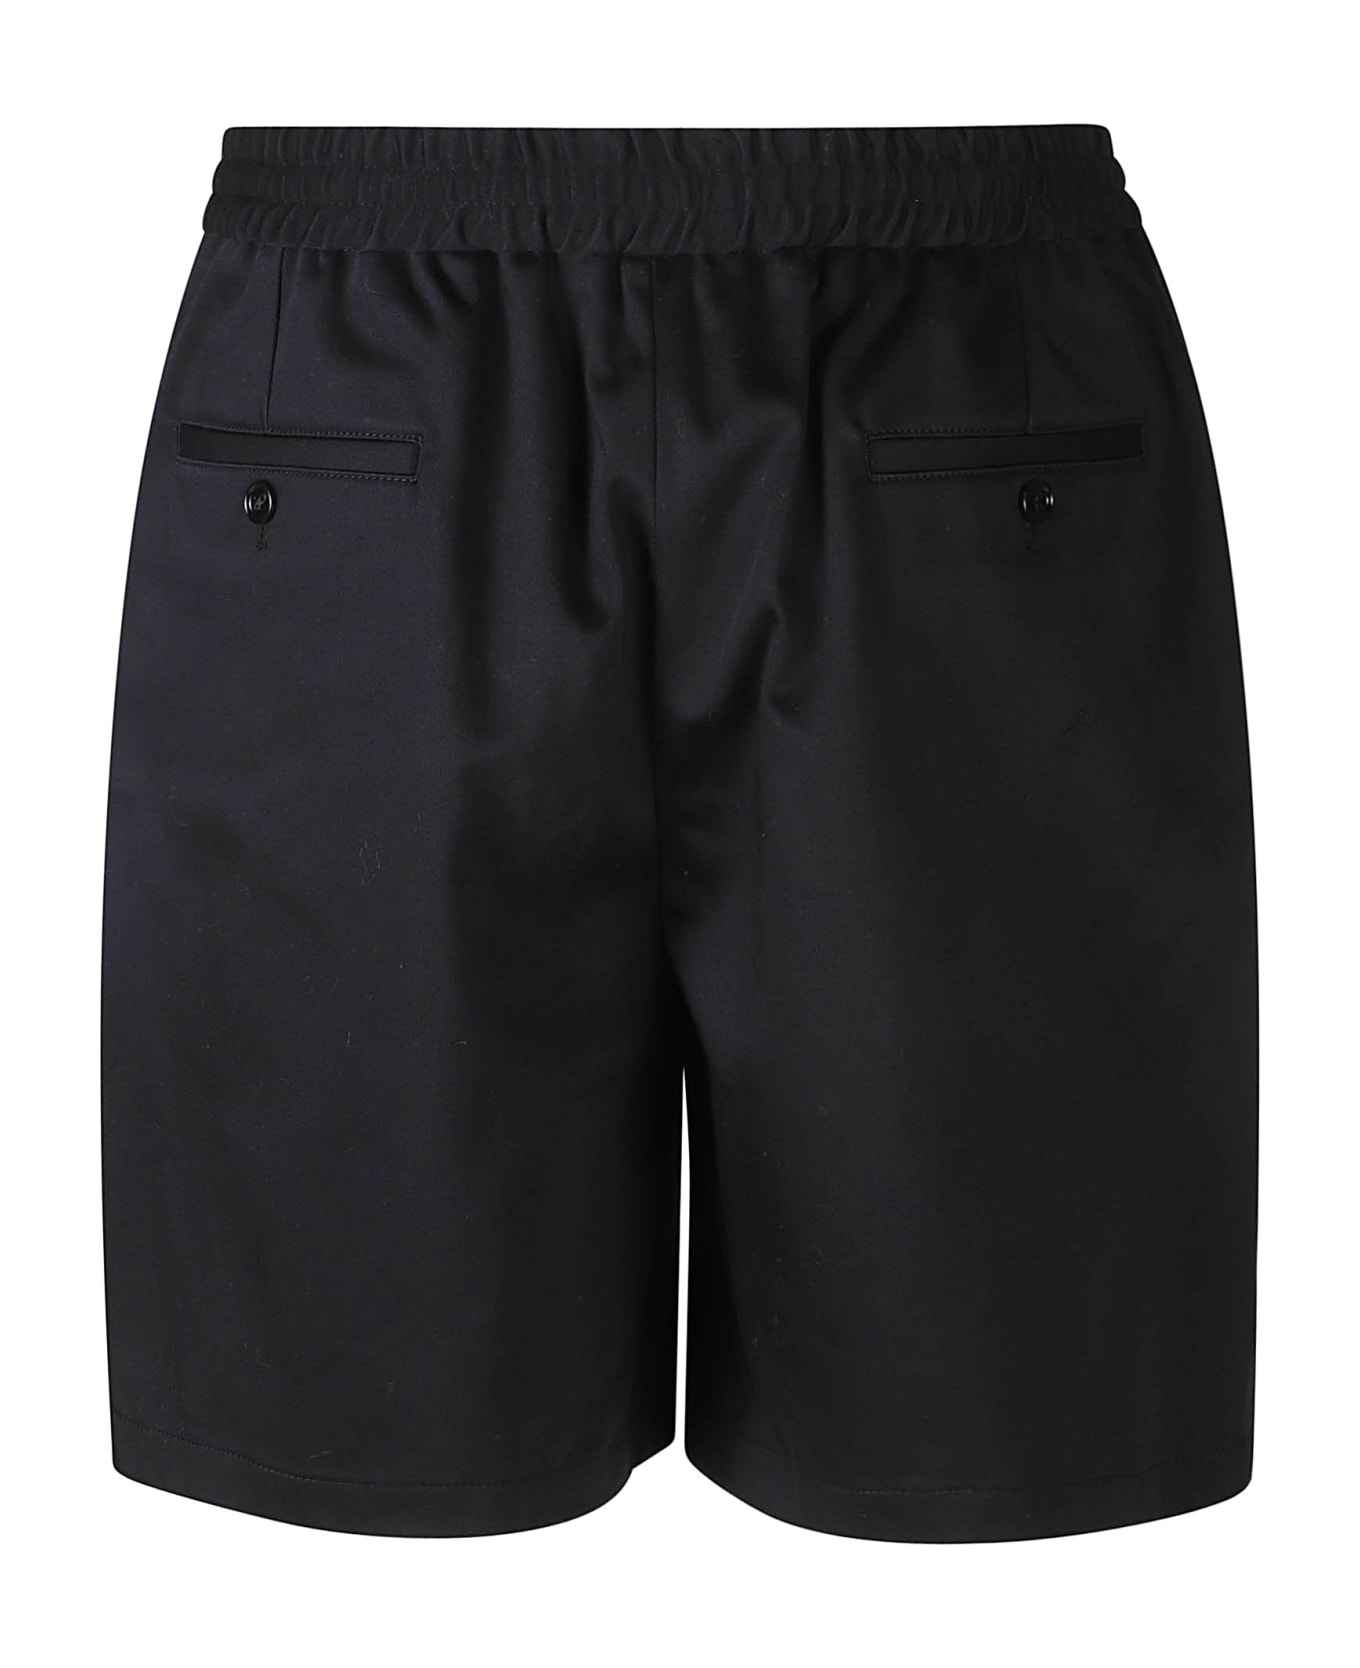 Ami Alexandre Mattiussi Elastic Waist Classic Shorts - Black ショートパンツ